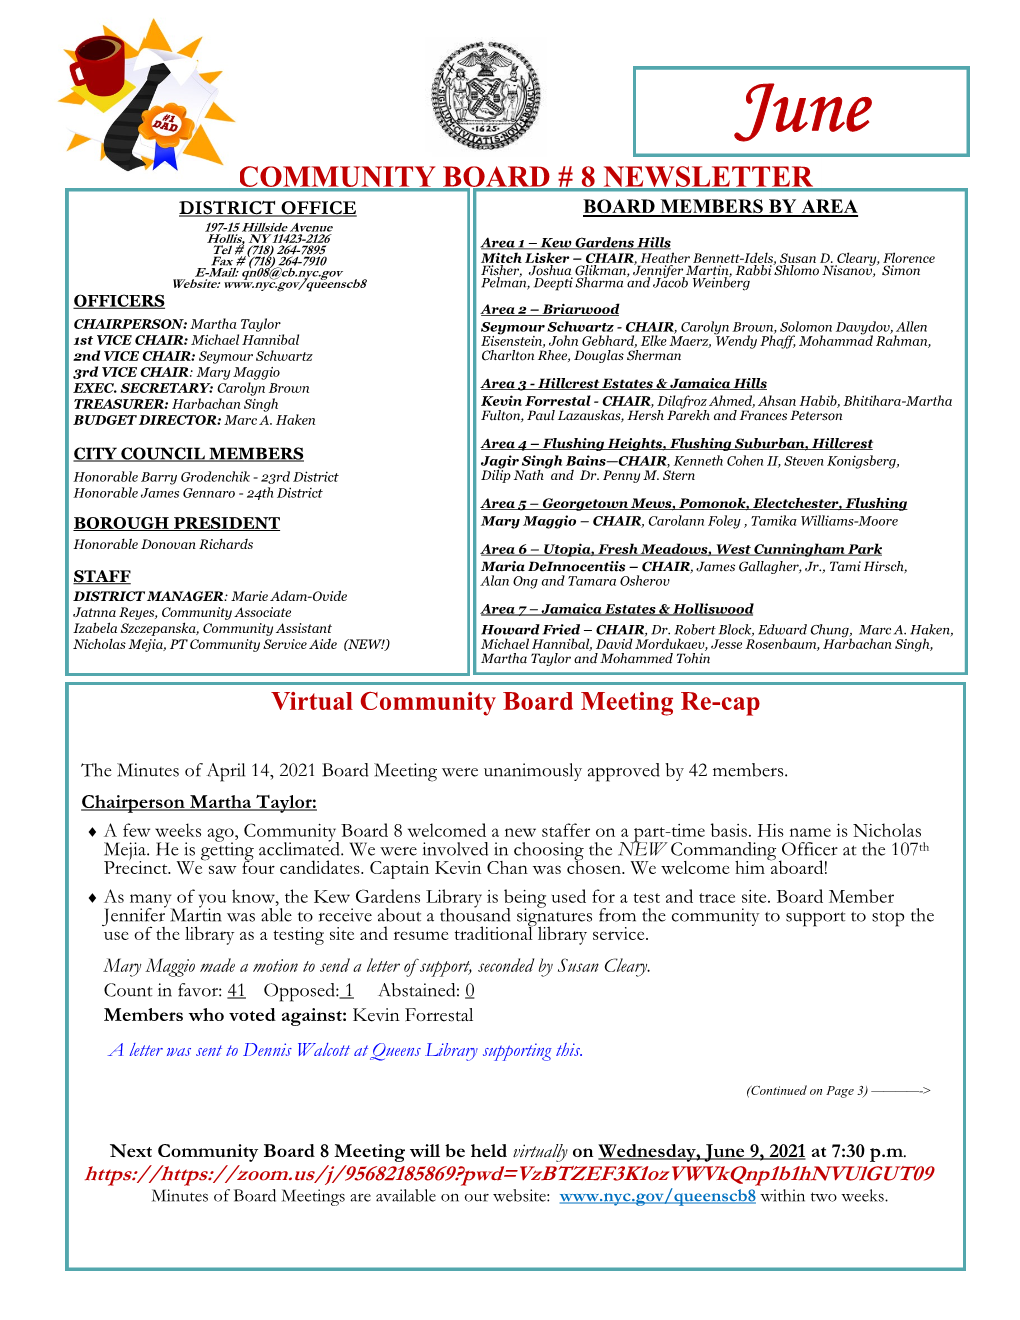 Community Board # 8 Newsletter